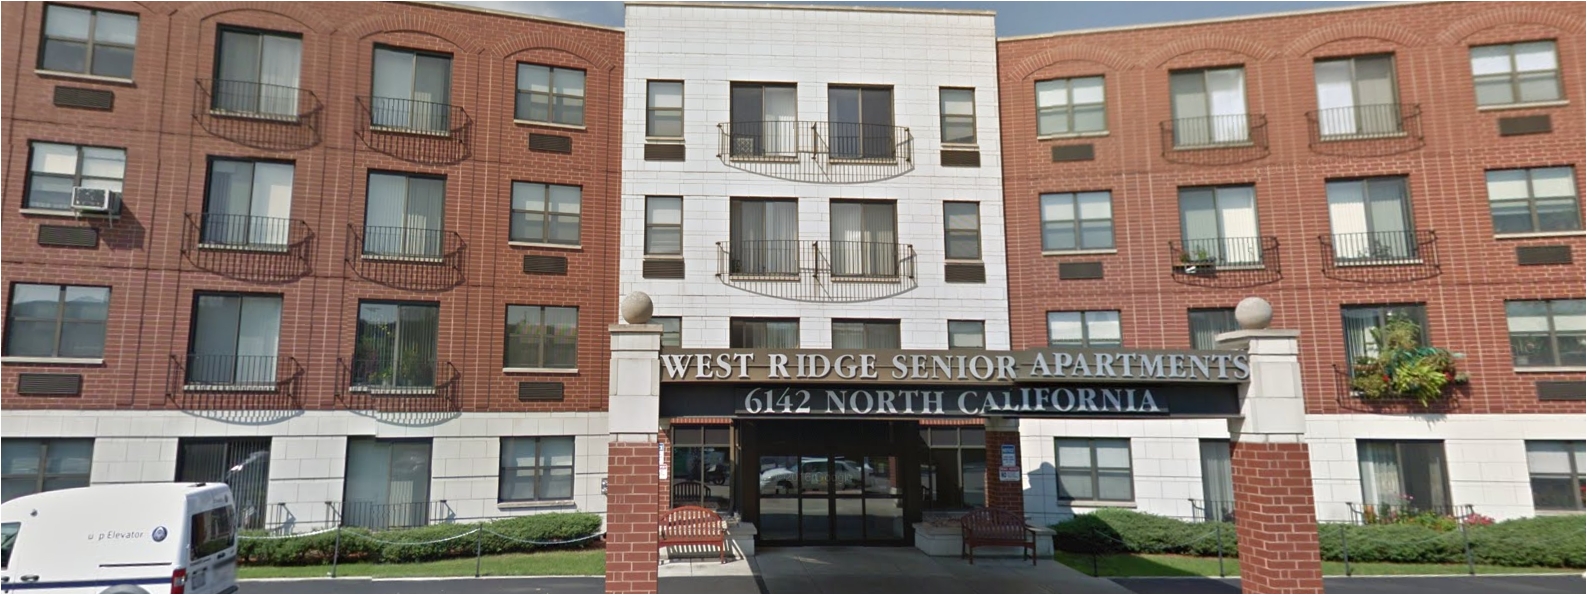 west ridge senior apartments